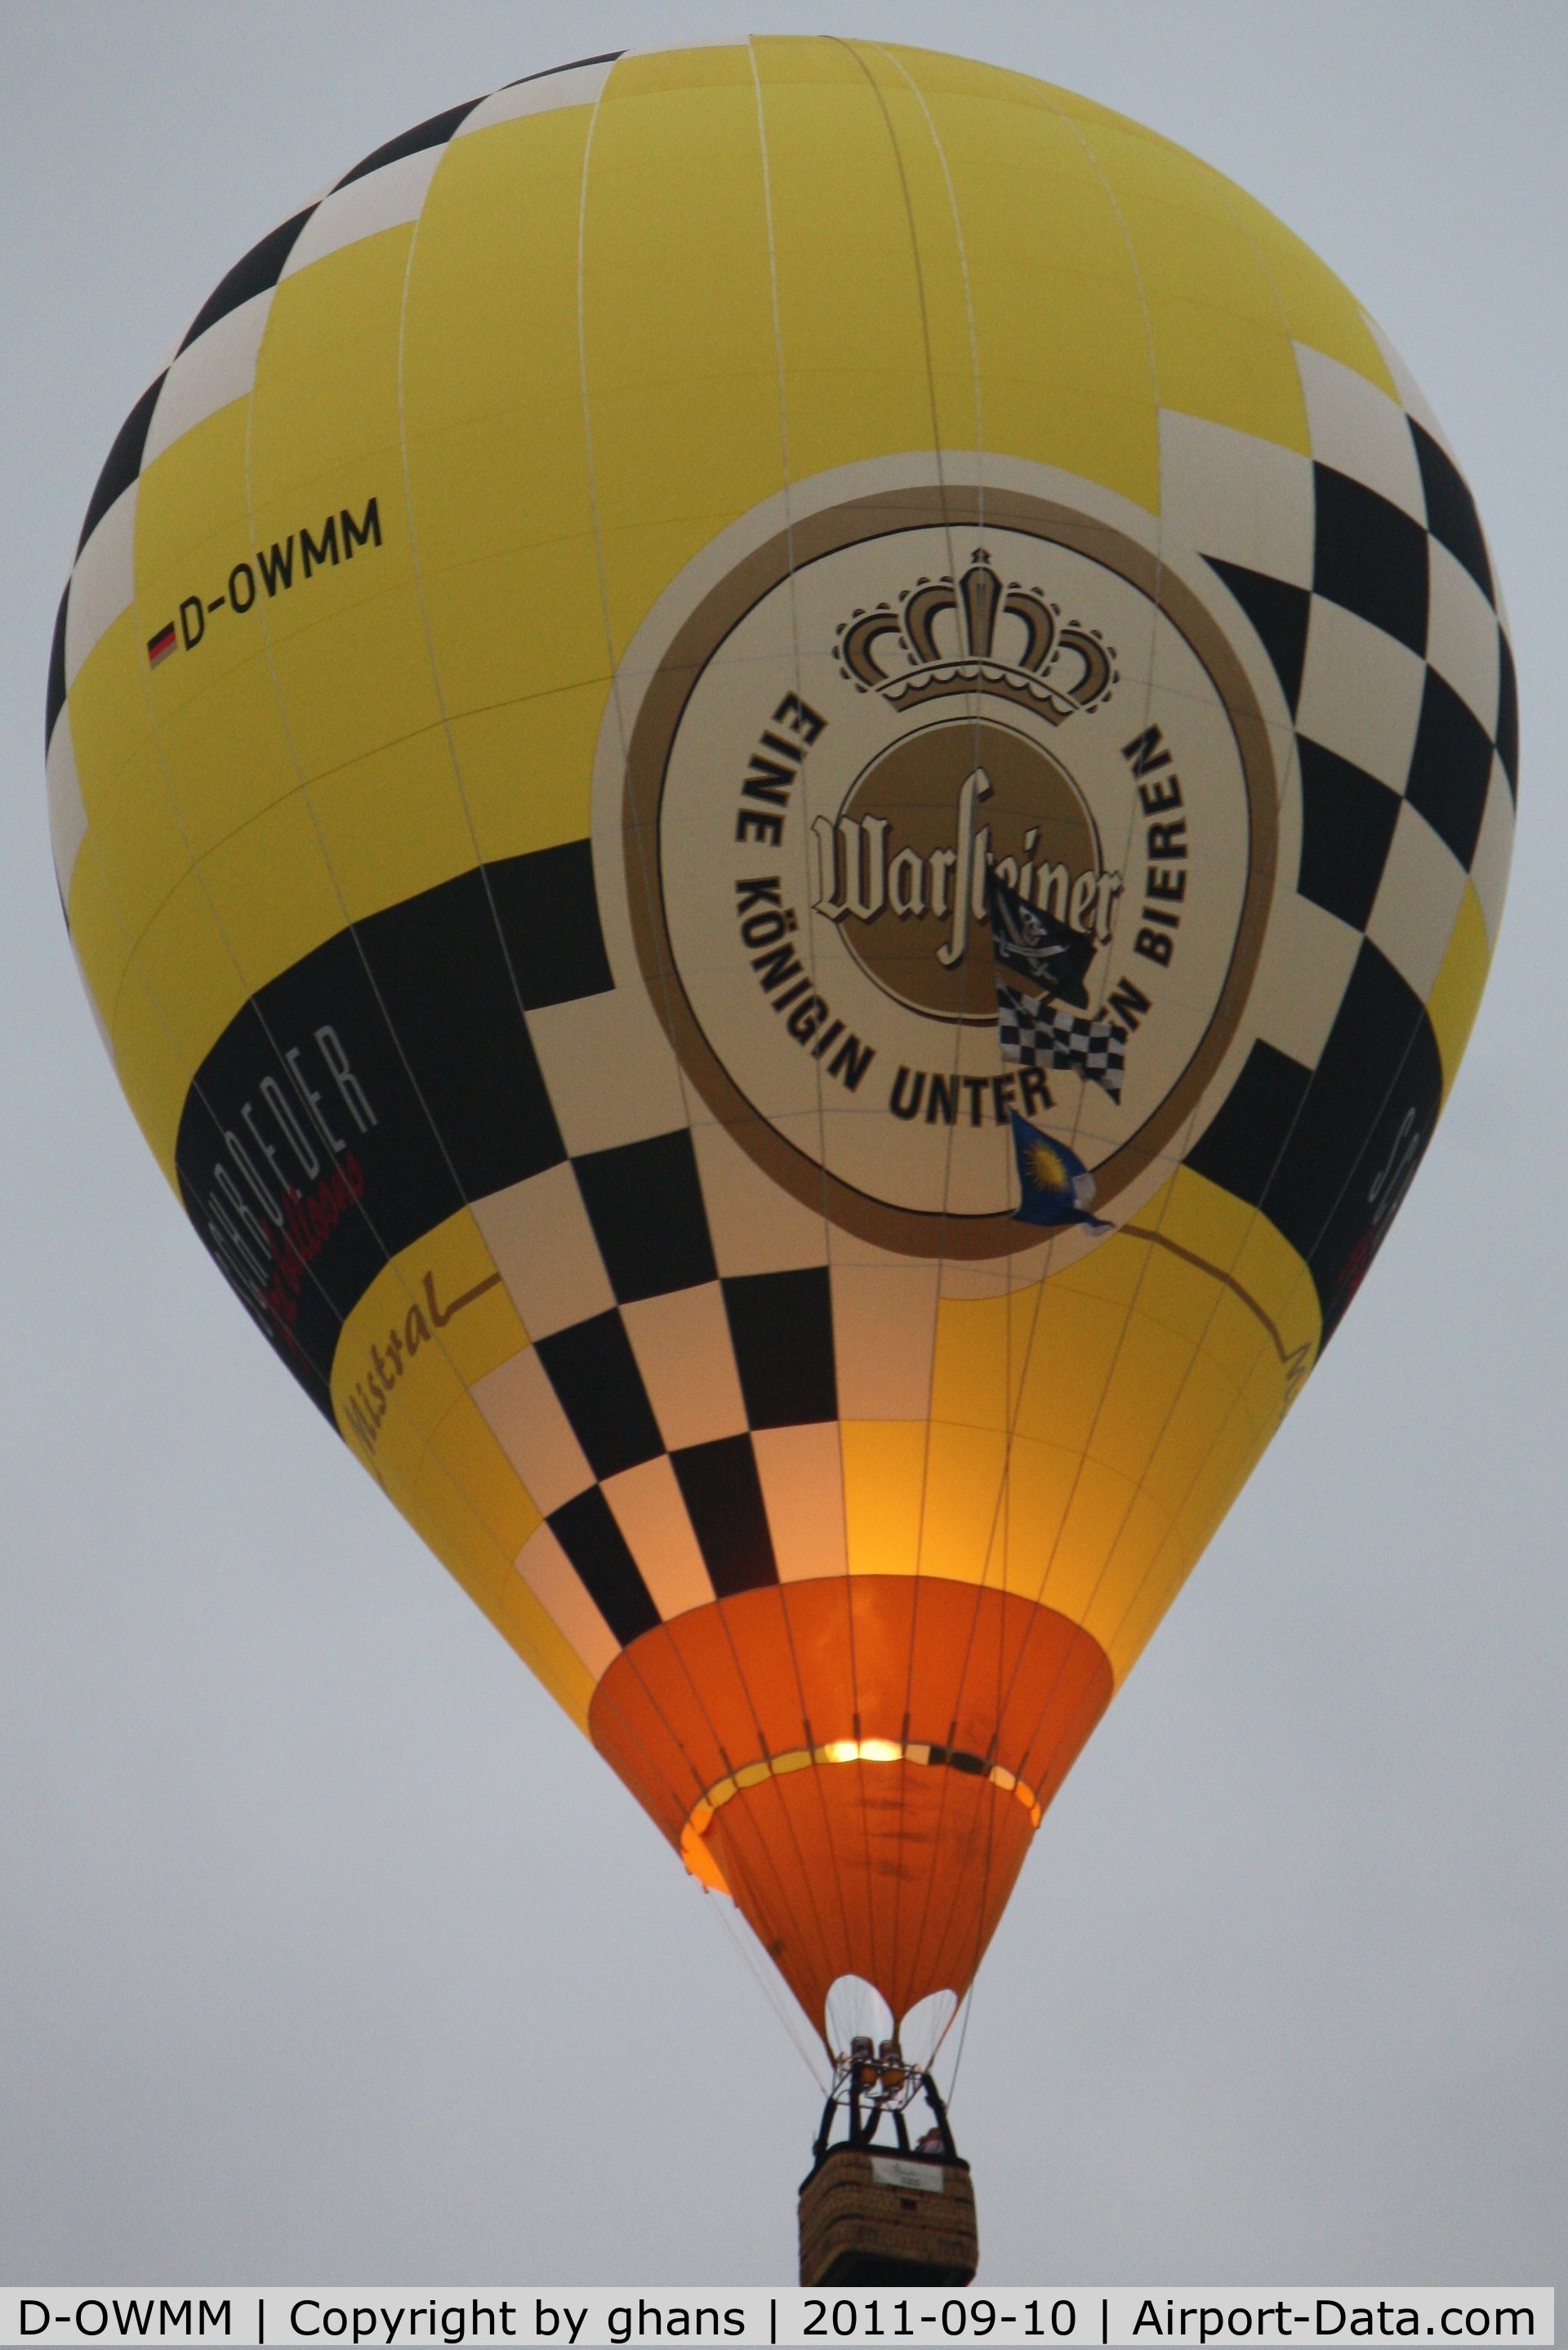 D-OWMM, 2009 Schroeder Fire Balloons Mistral C/N 1354, WIM 2011
'Warsteiner'